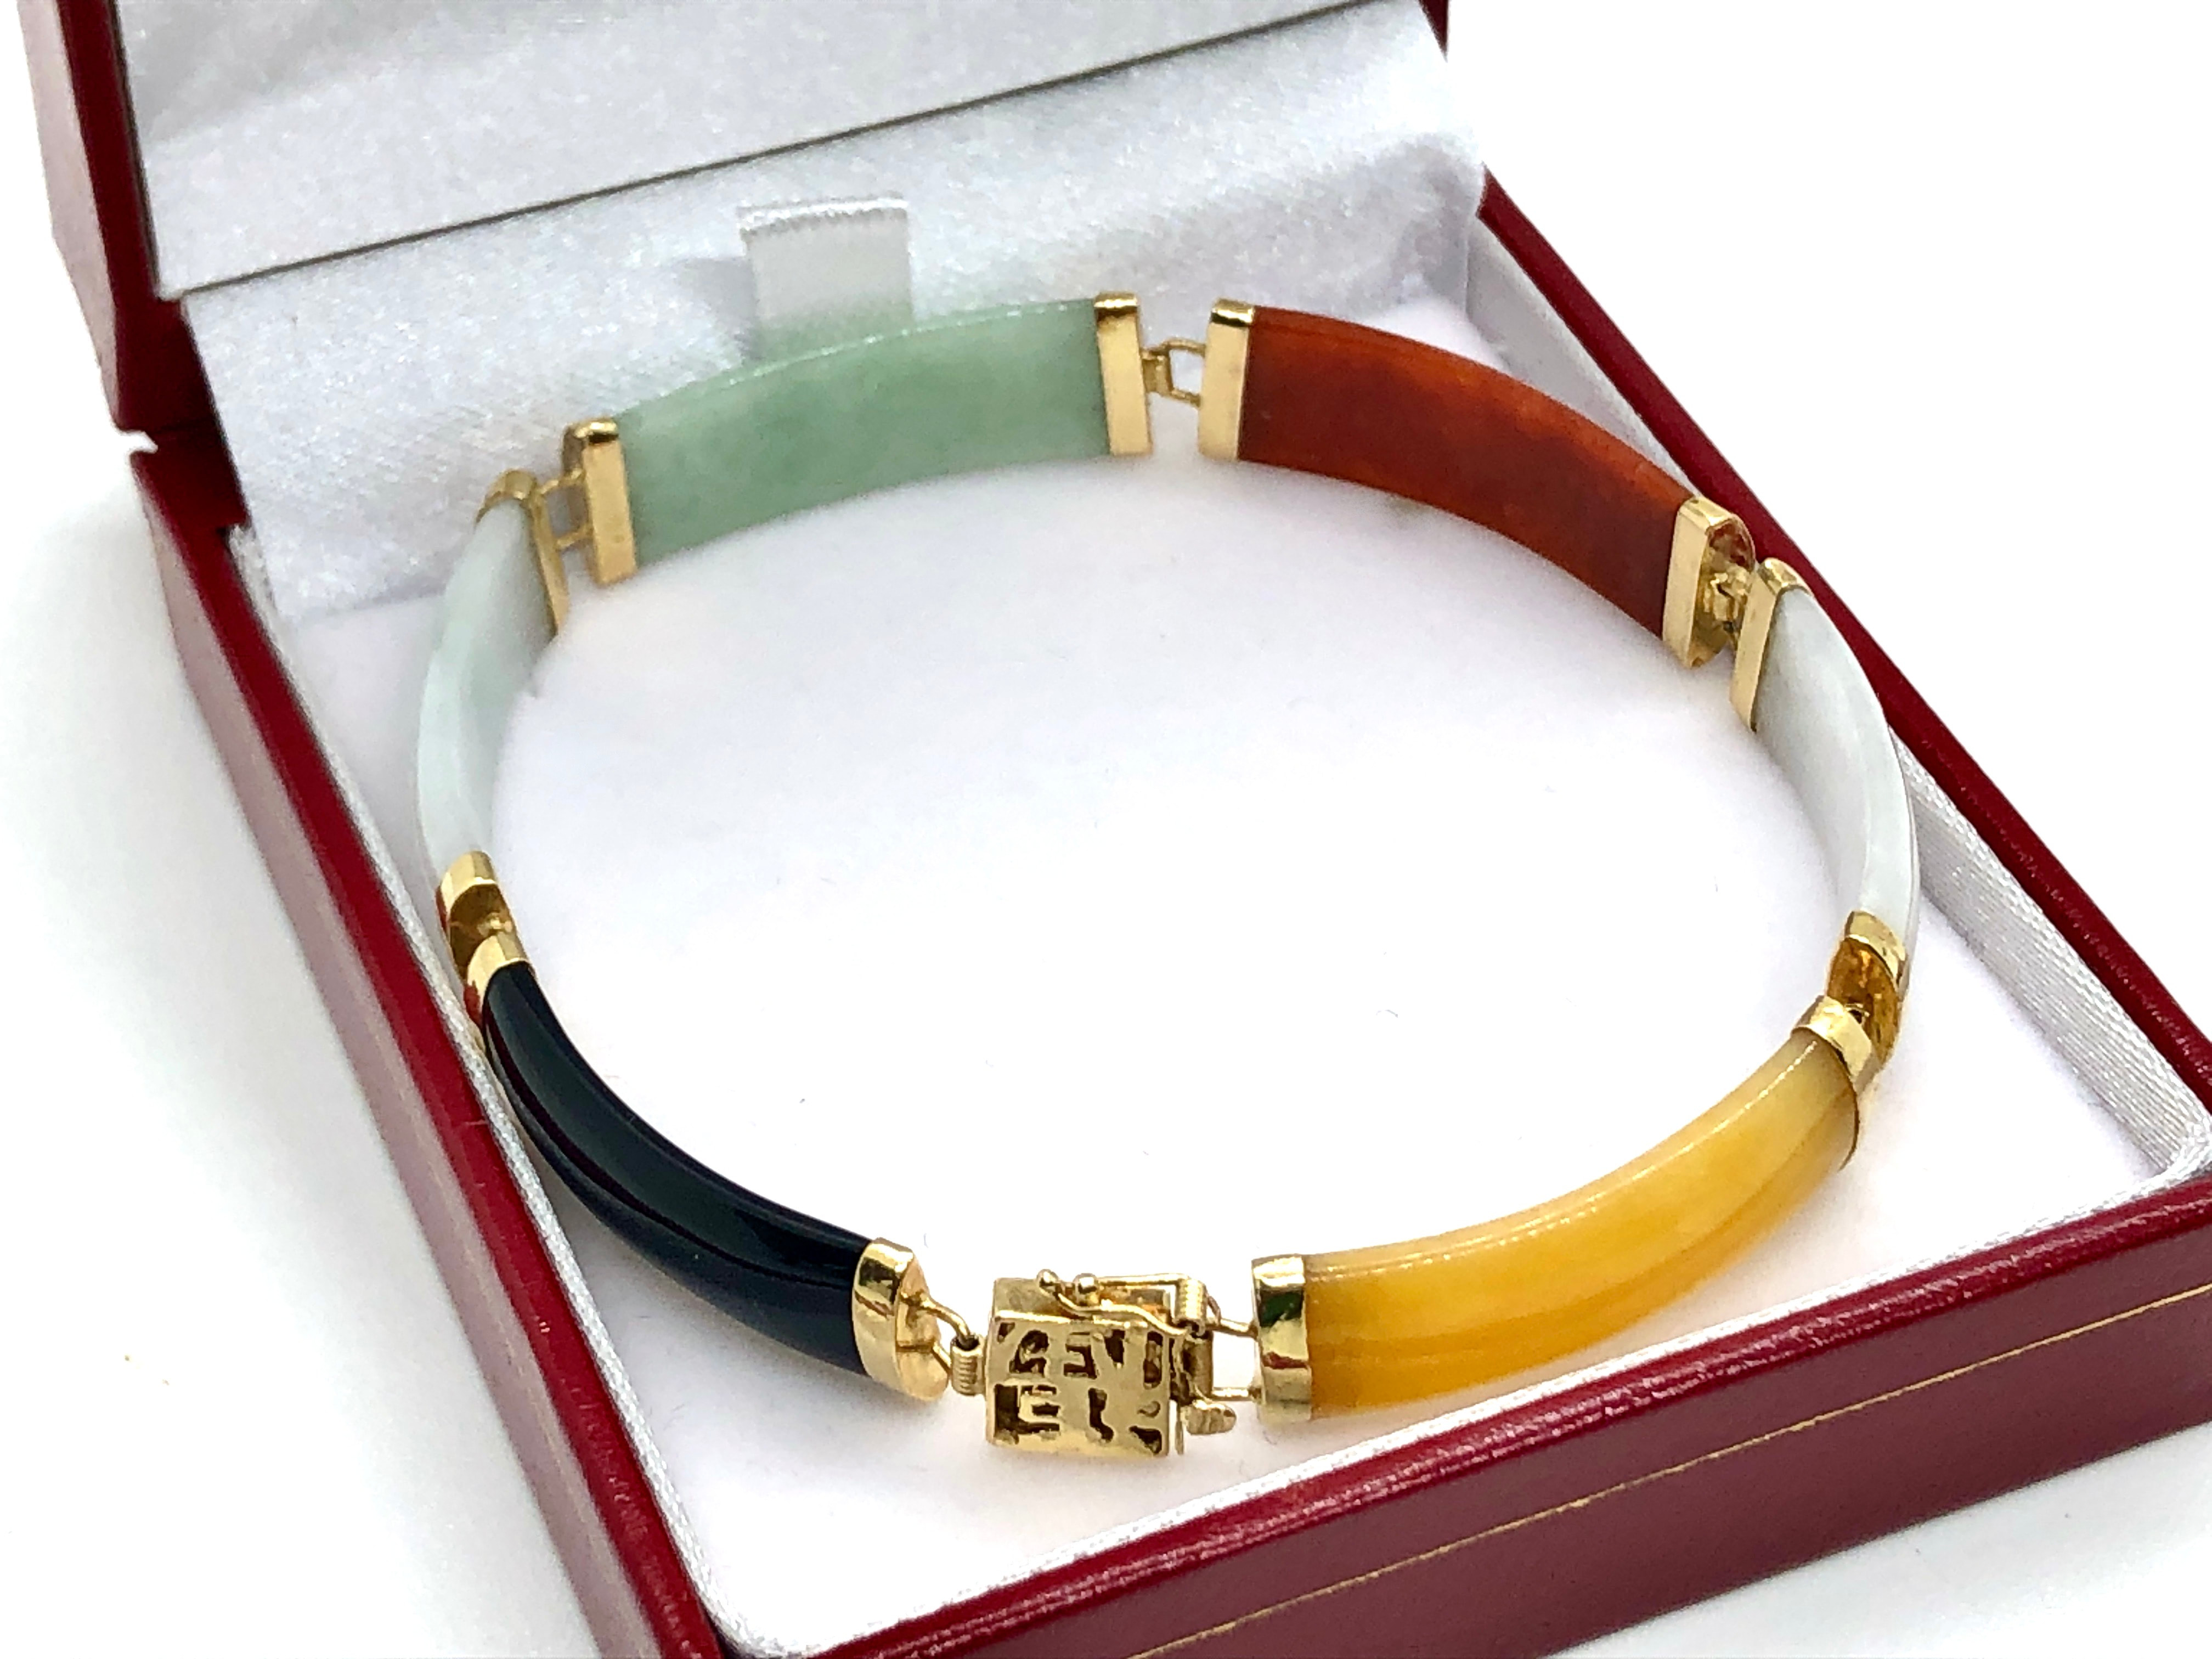 Thushi bracelet / Indian traditional bracelet / gold plated bracelet /  Thushi / Kolhapuri thushi bracelet / Marathi traditional jewelry